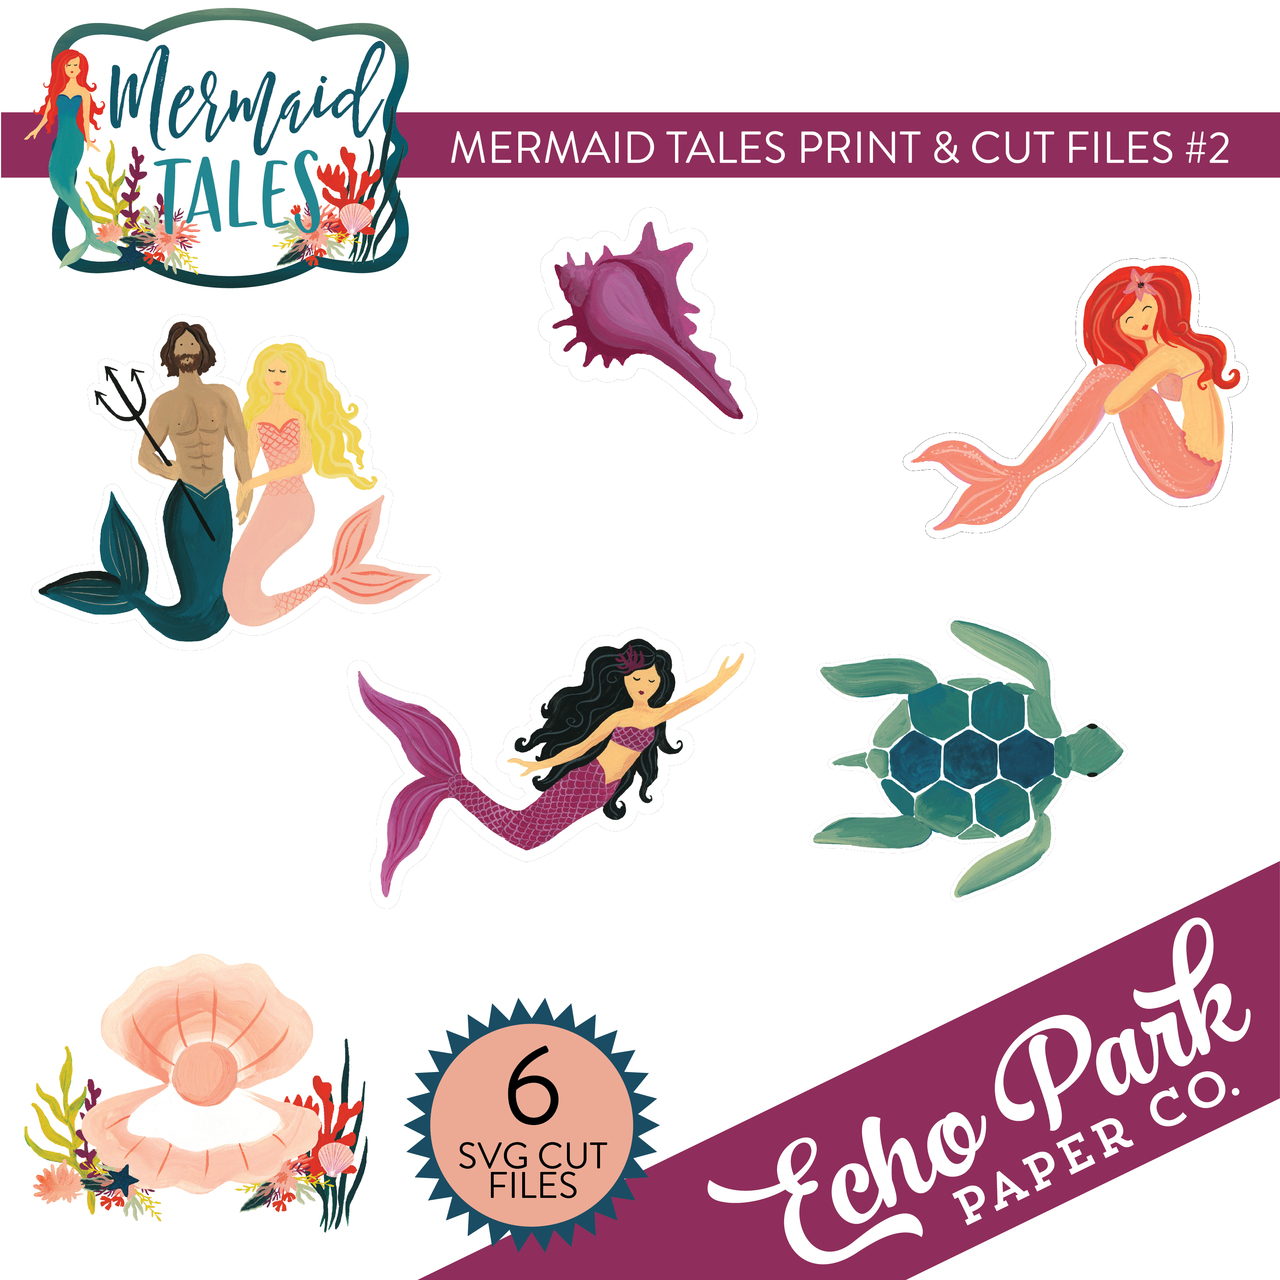 Mermaid Tales Print & Cut Files #2